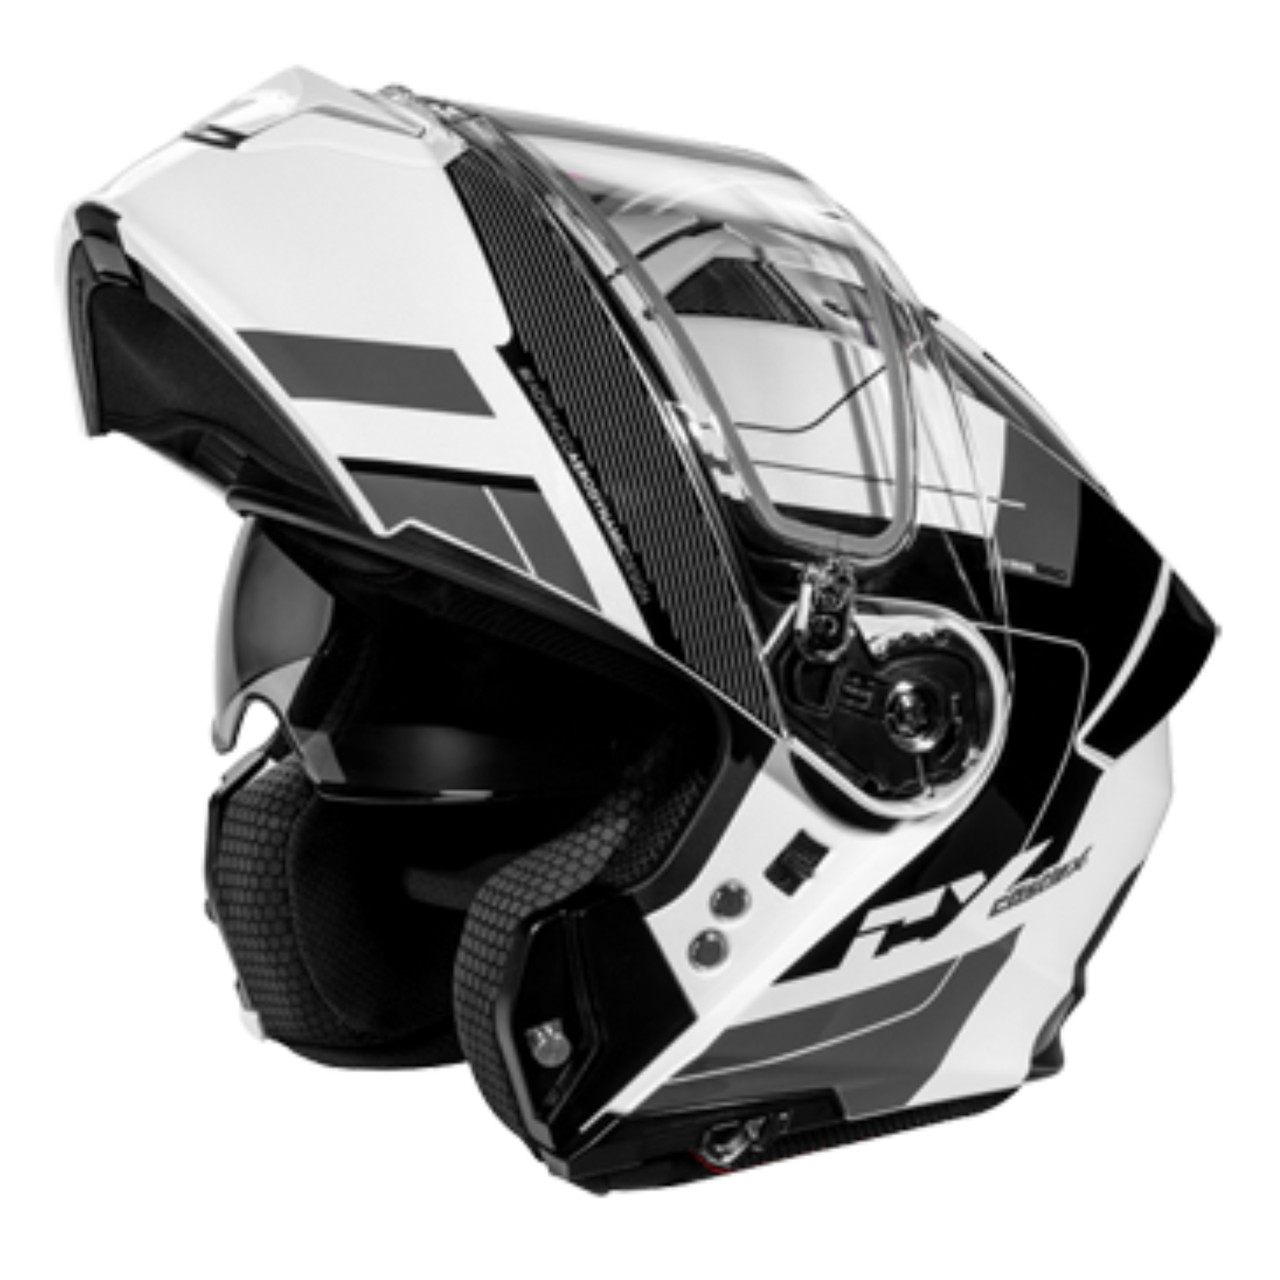 Castle X New Large White/Black Electric CX935 Raid Helmet, 36-26106